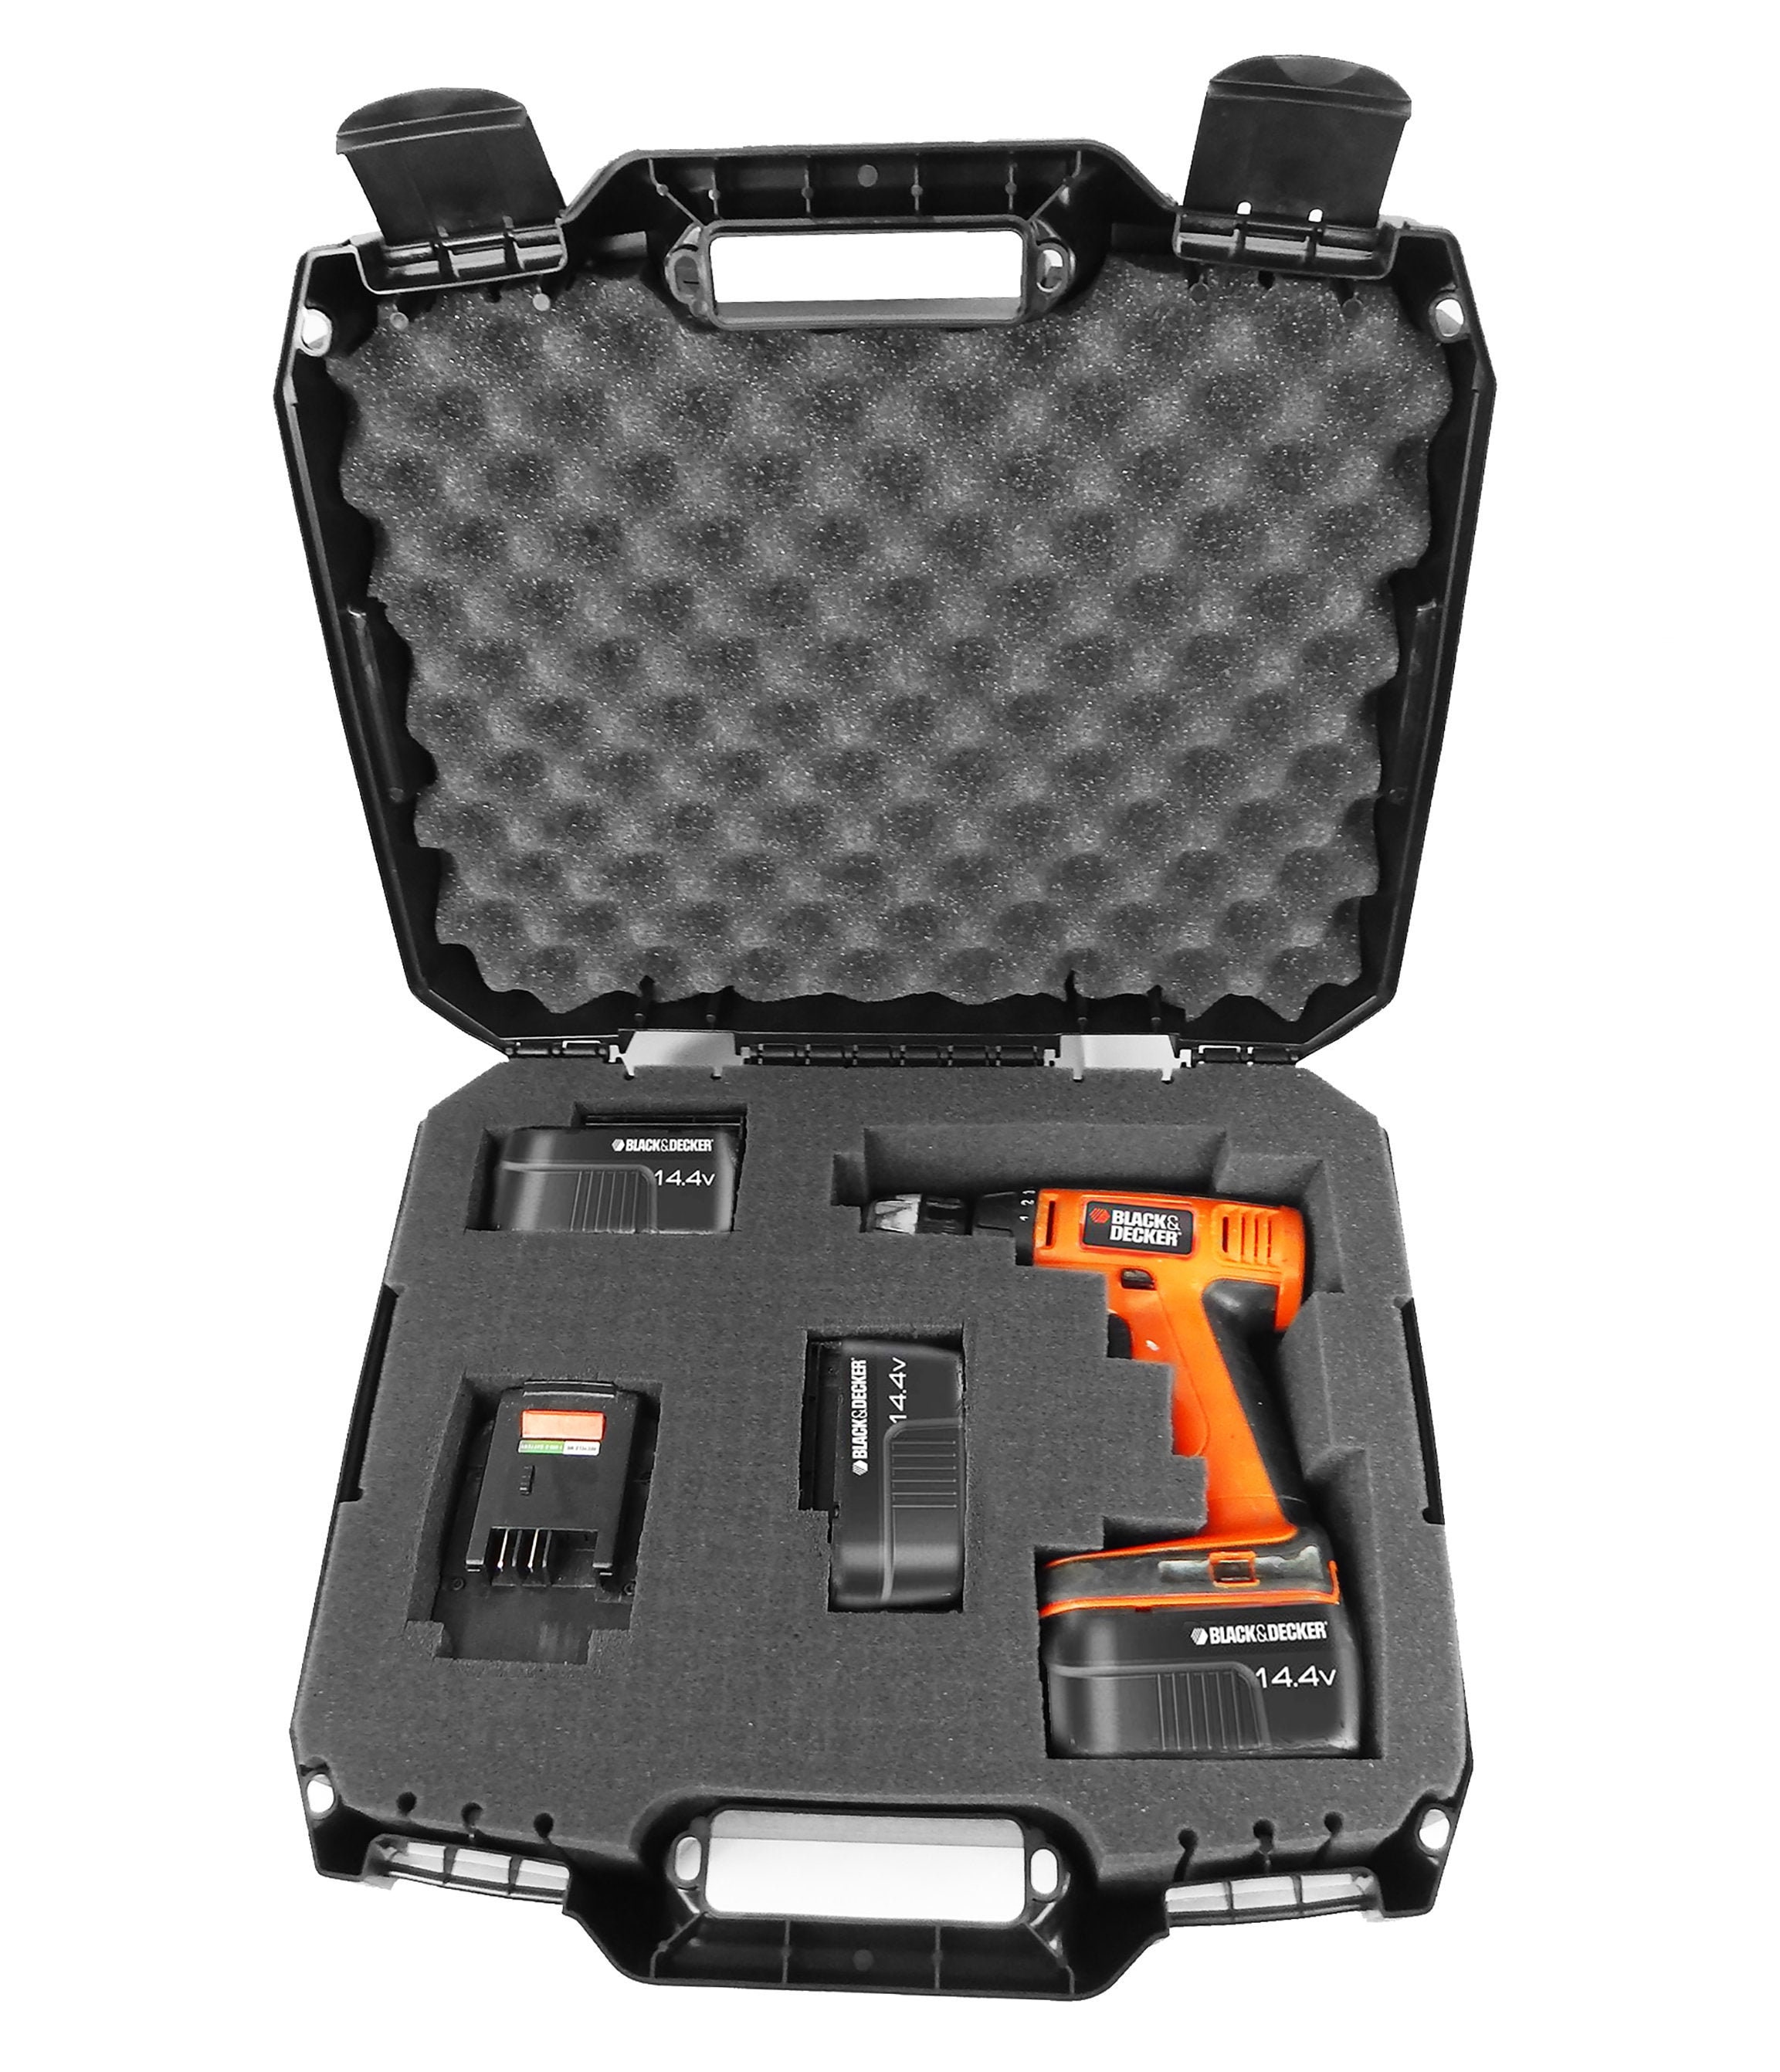 CM Drill Case Fits Black and Decker Cordless Drills or Drivers Model Ldx120 20  Volt, Ld120va, Bdcd120va, Bdcdmt120, Bdcdd220c and More -  UK